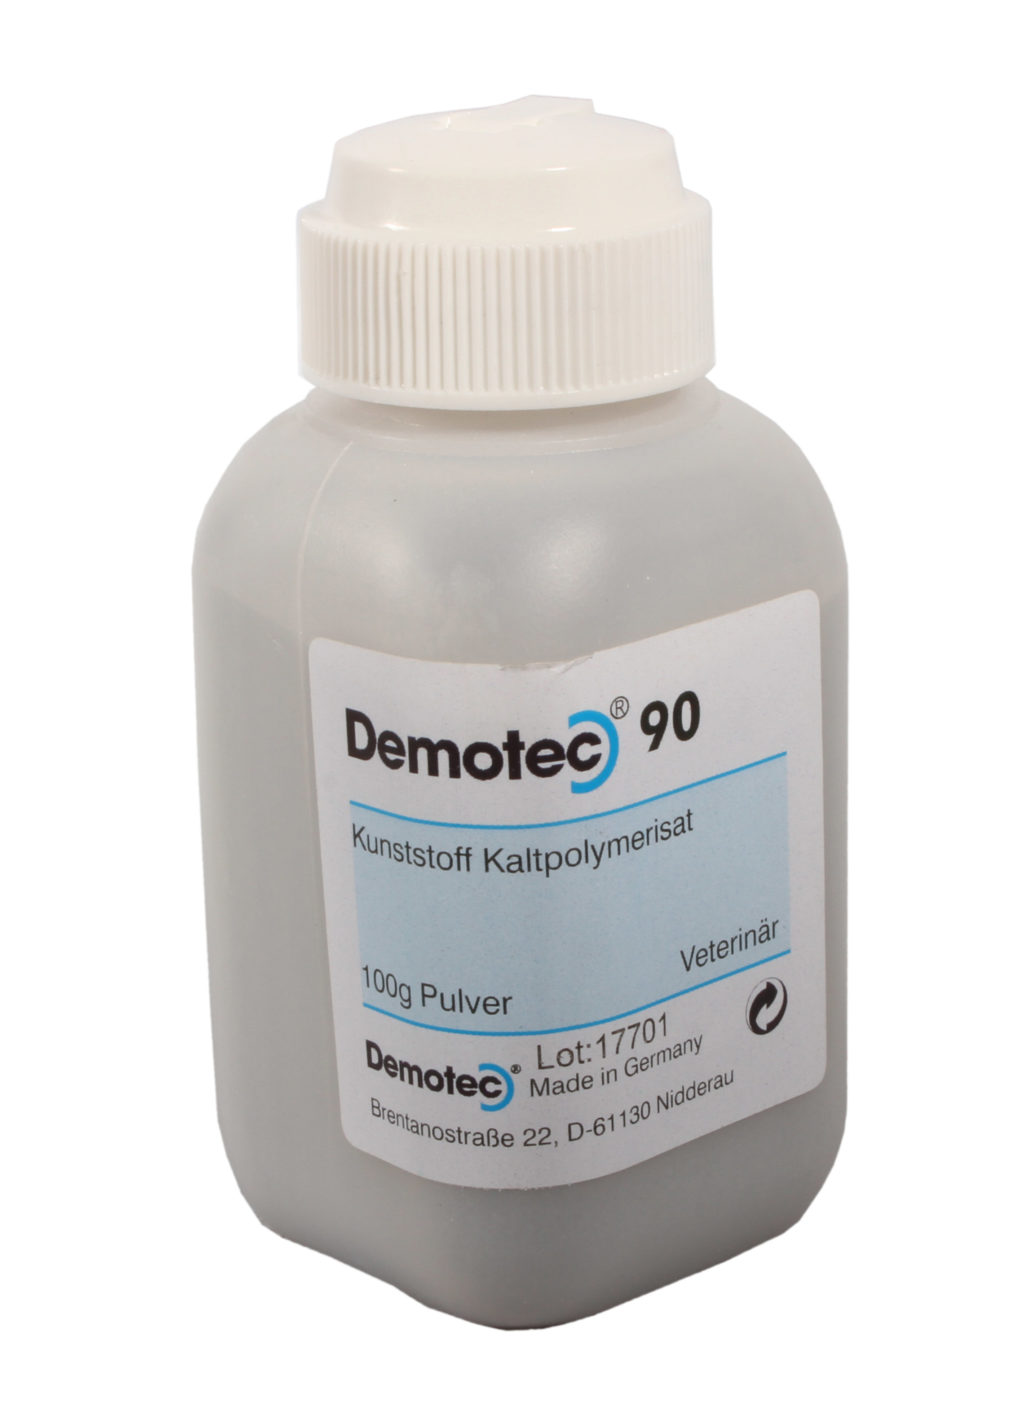 Demotec-90 Powder 100g